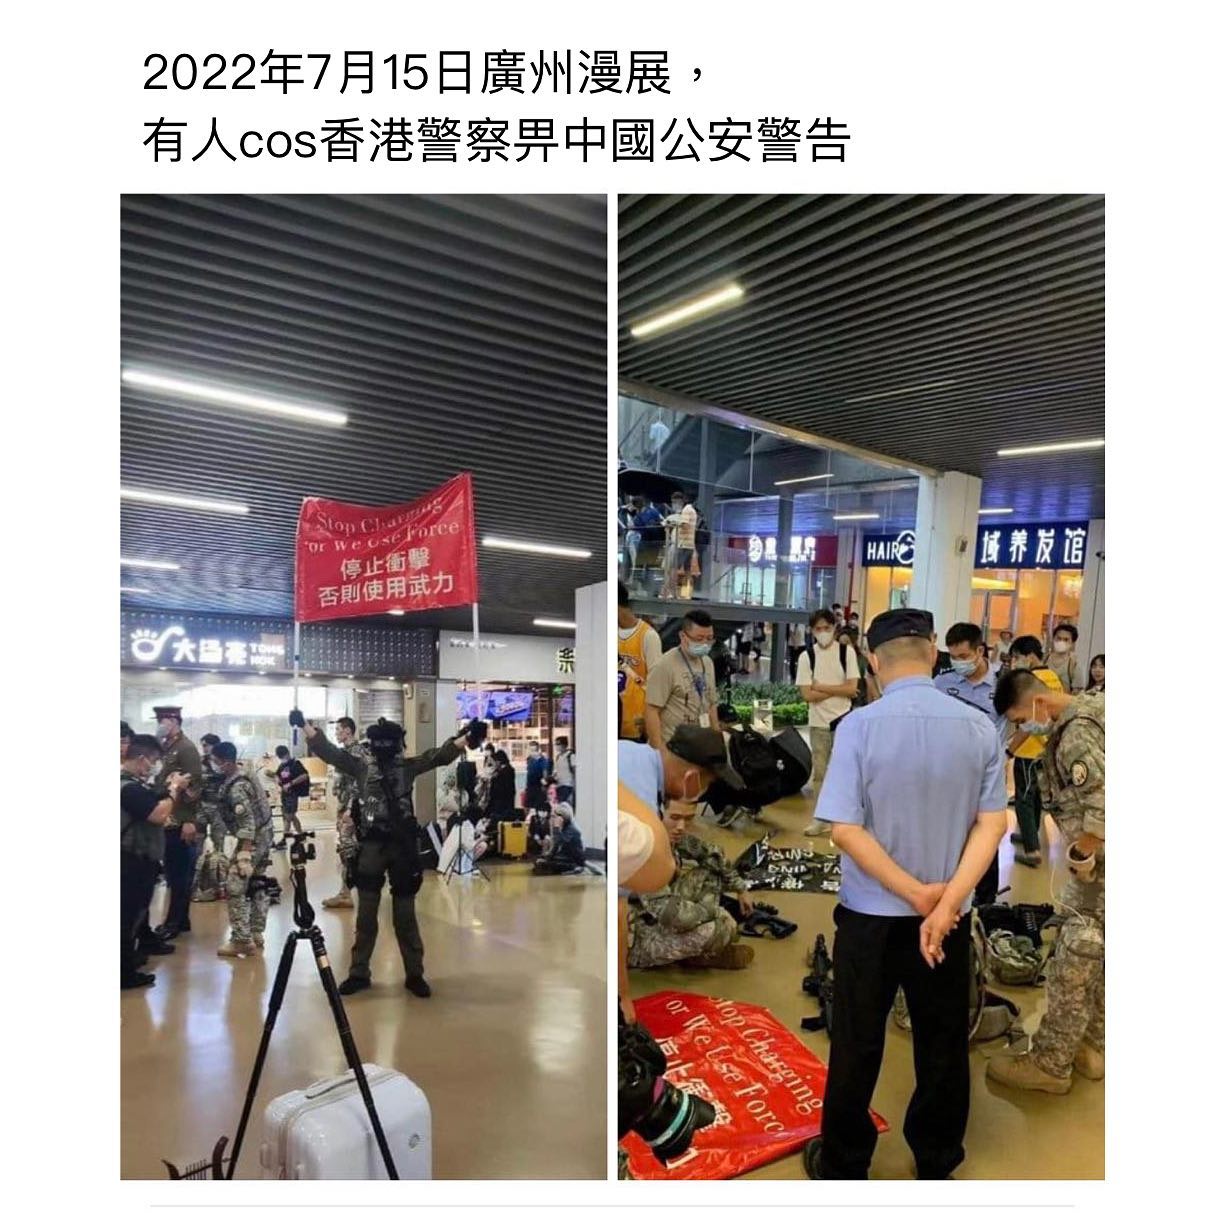 廣州人動漫展上cosplay香港警察被公安阻止 橫額被沒收